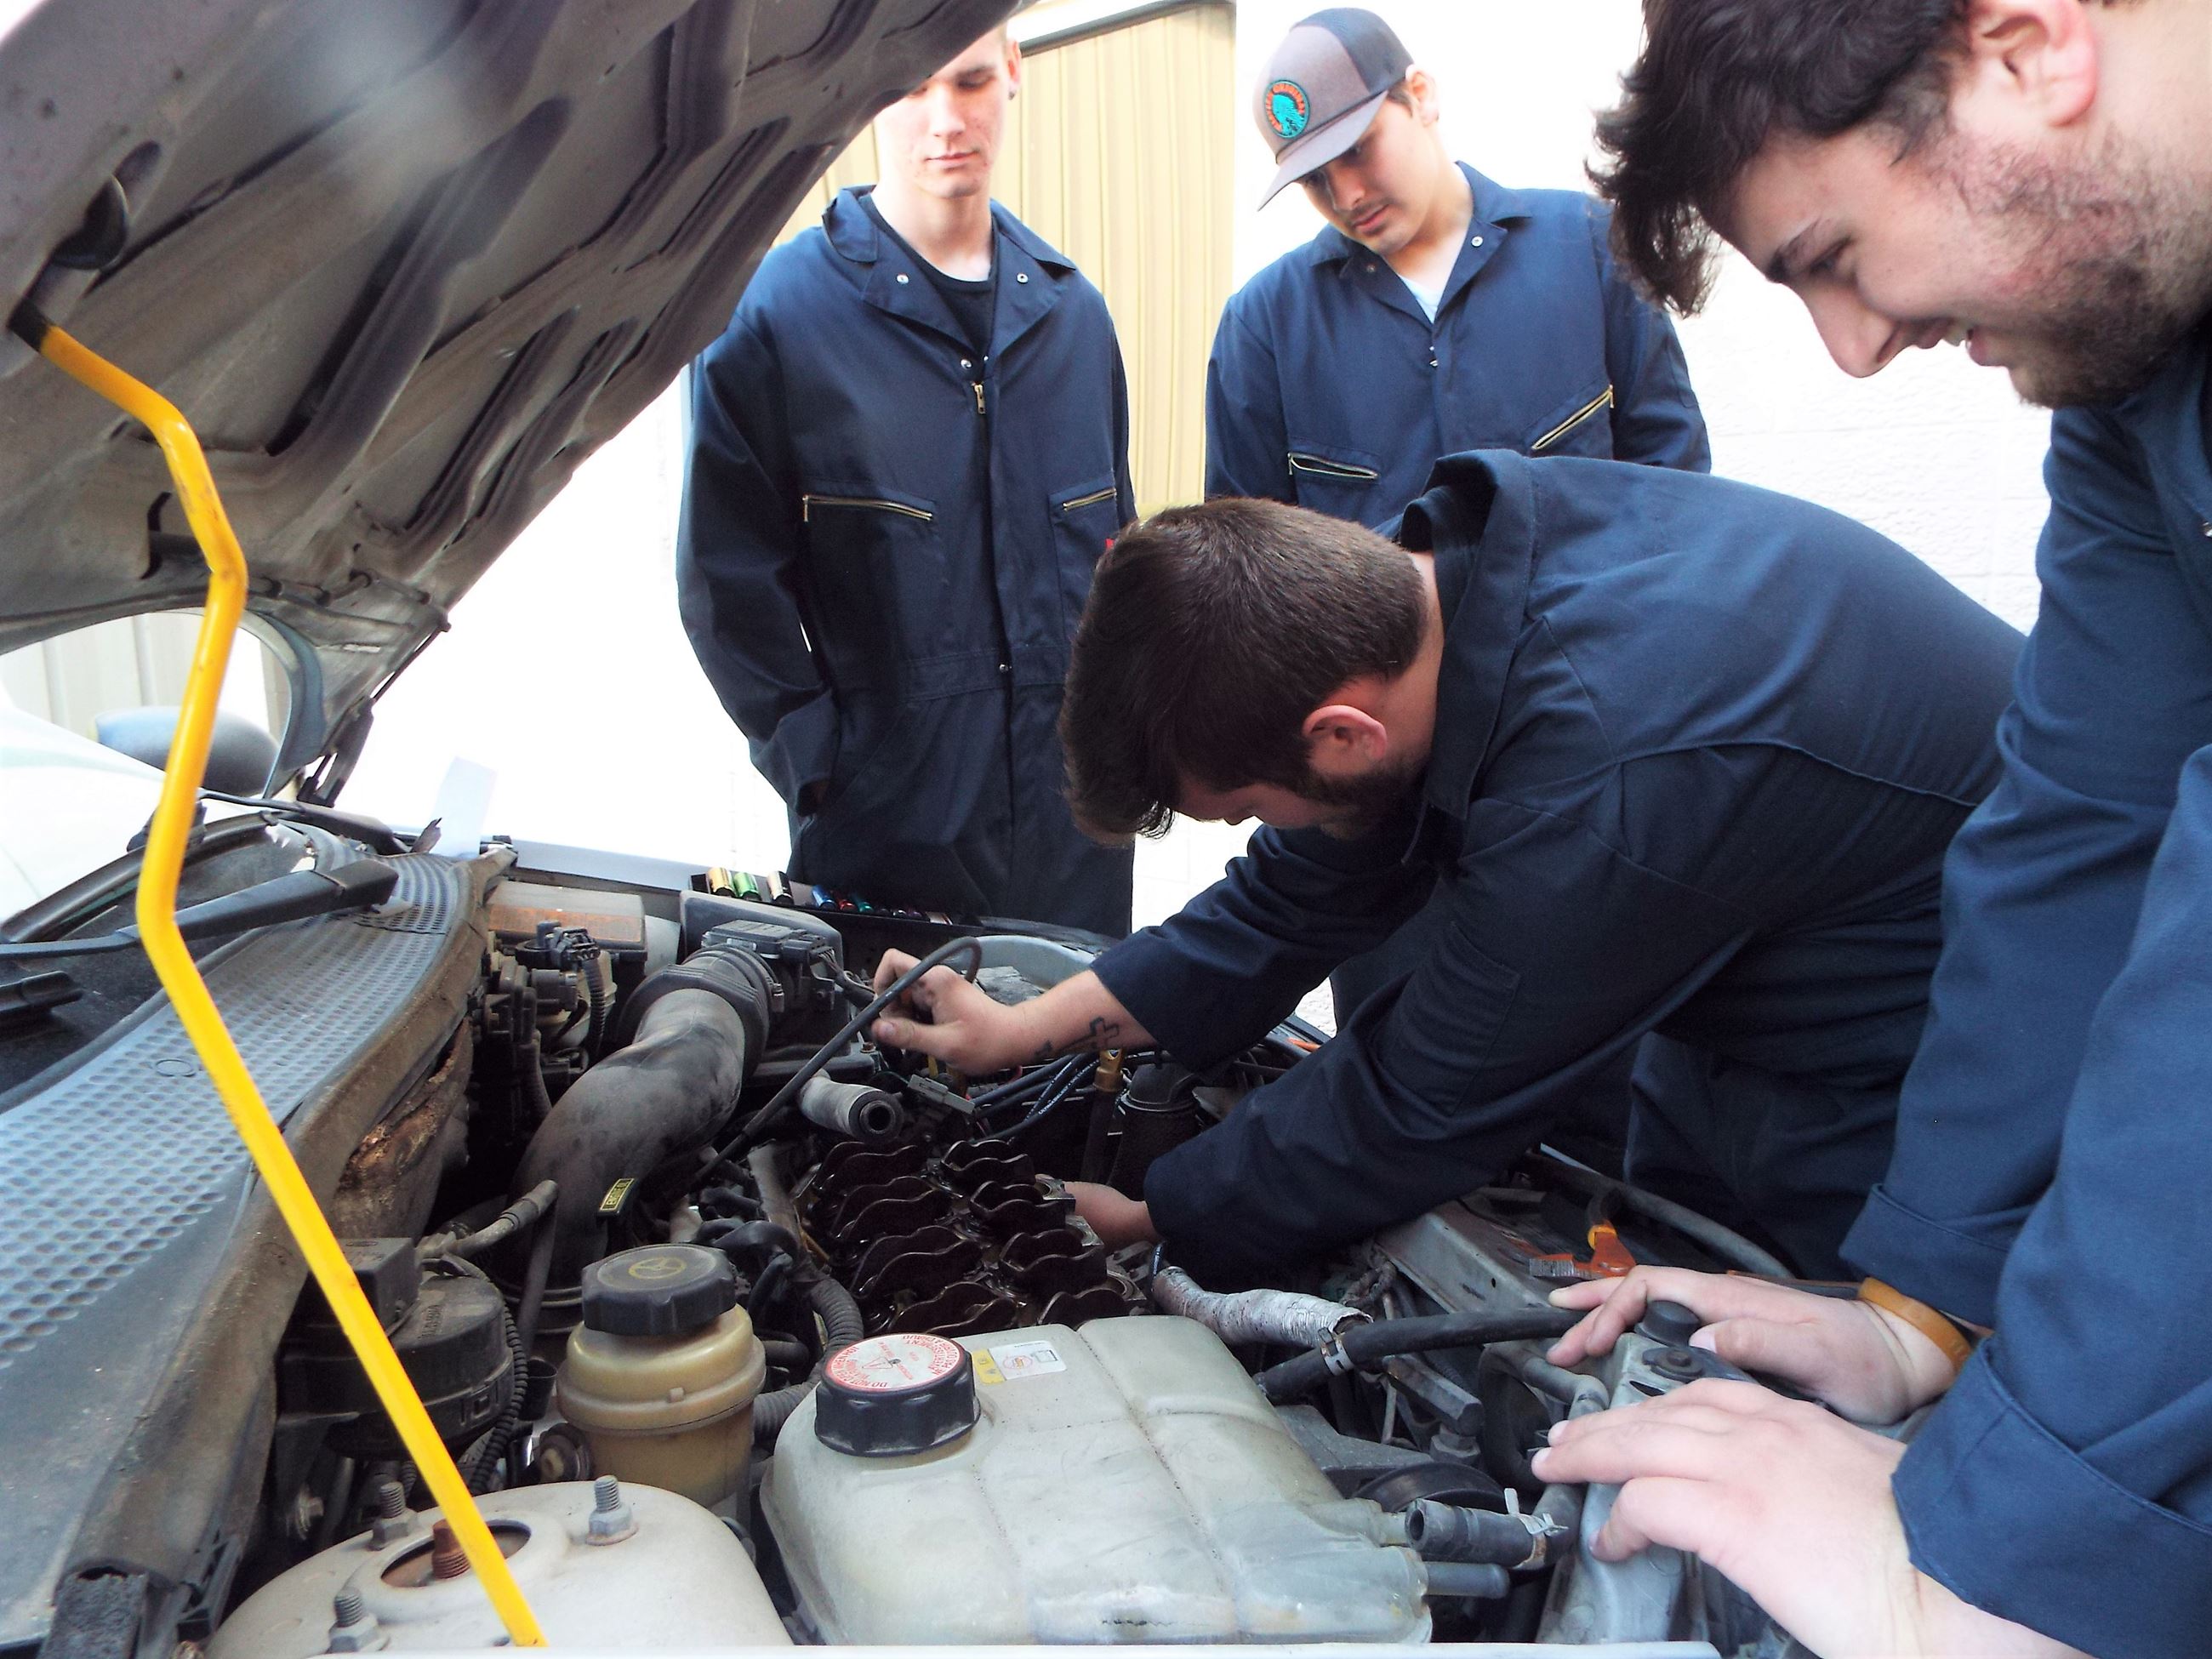 Students repair car for donation to veteran